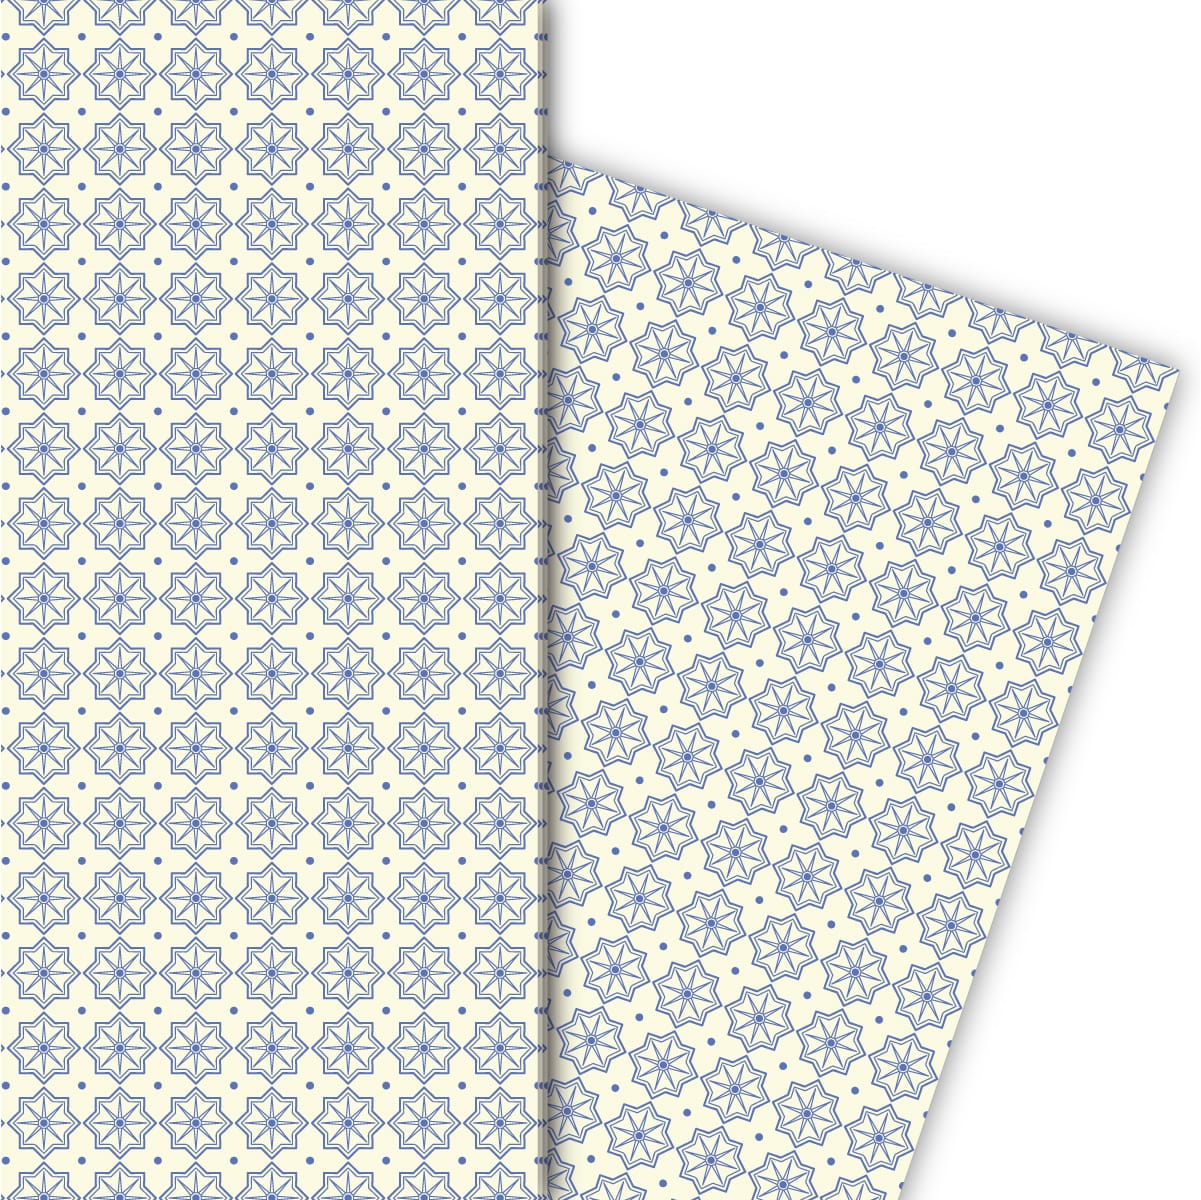 Kartenkaufrausch: Edles indigo Muster Geschenkpapier aus unserer Geburtstags Papeterie in blau